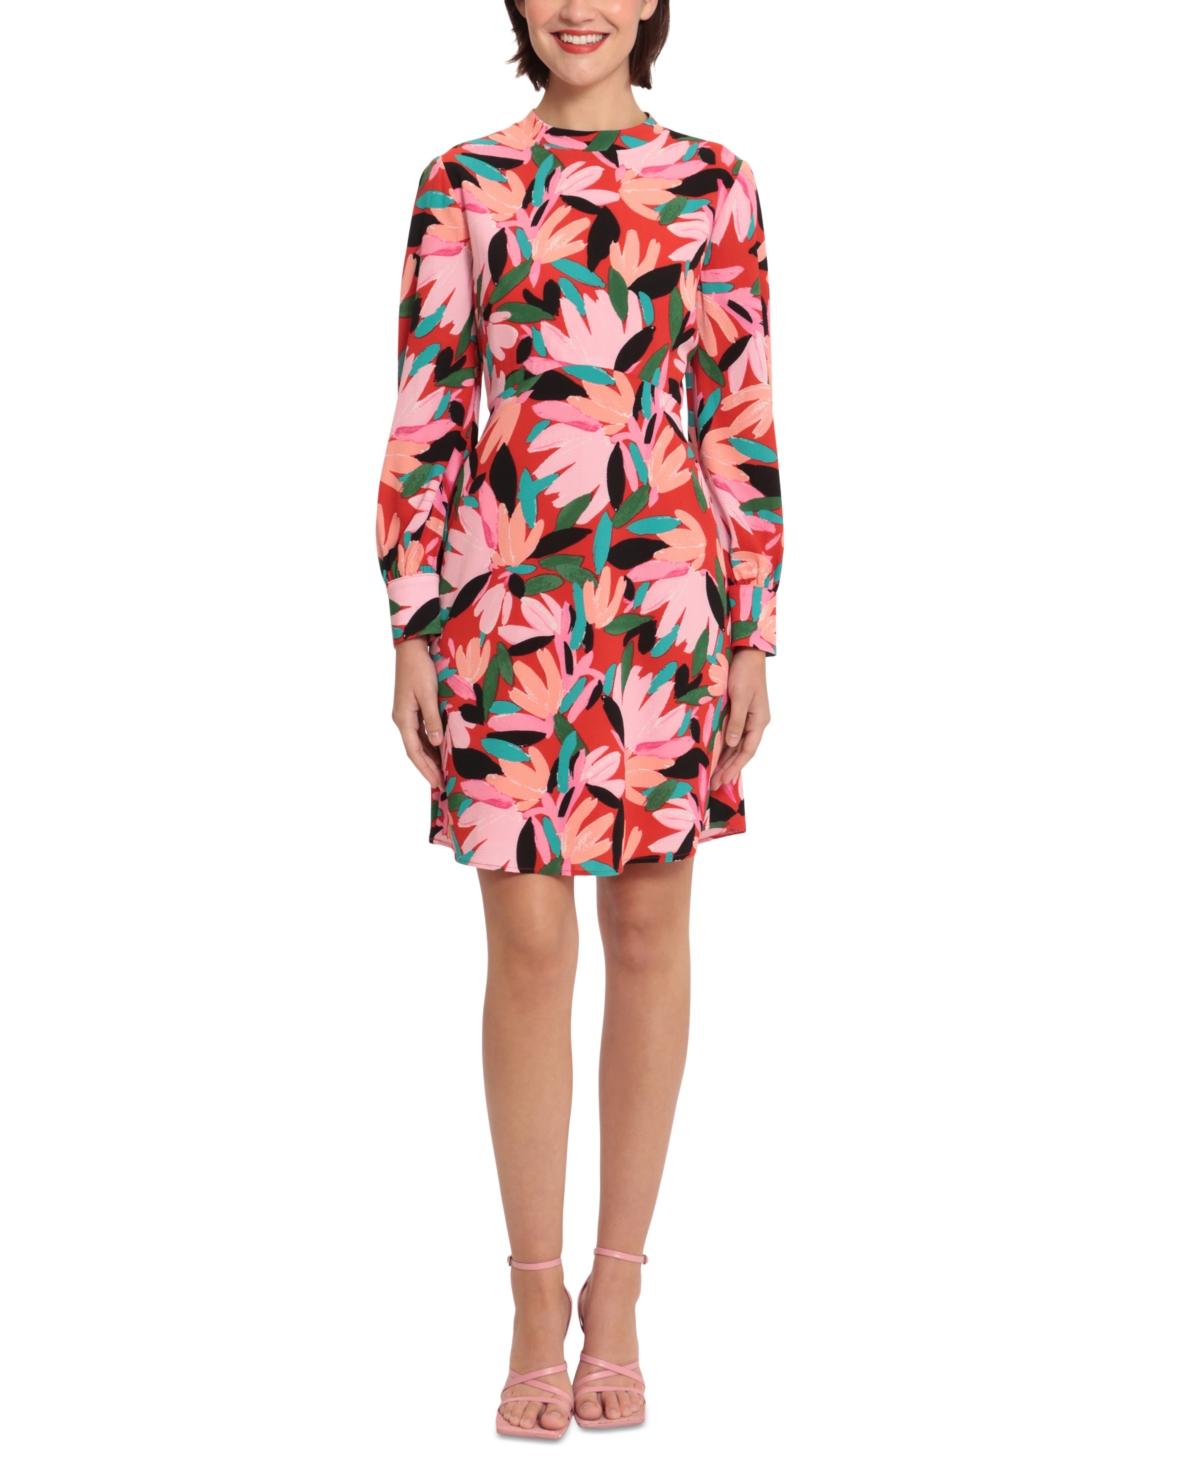 Women's Floral-Print Buttoned-Cuff Long-Sleeve Dress - Poppy/Light Pink